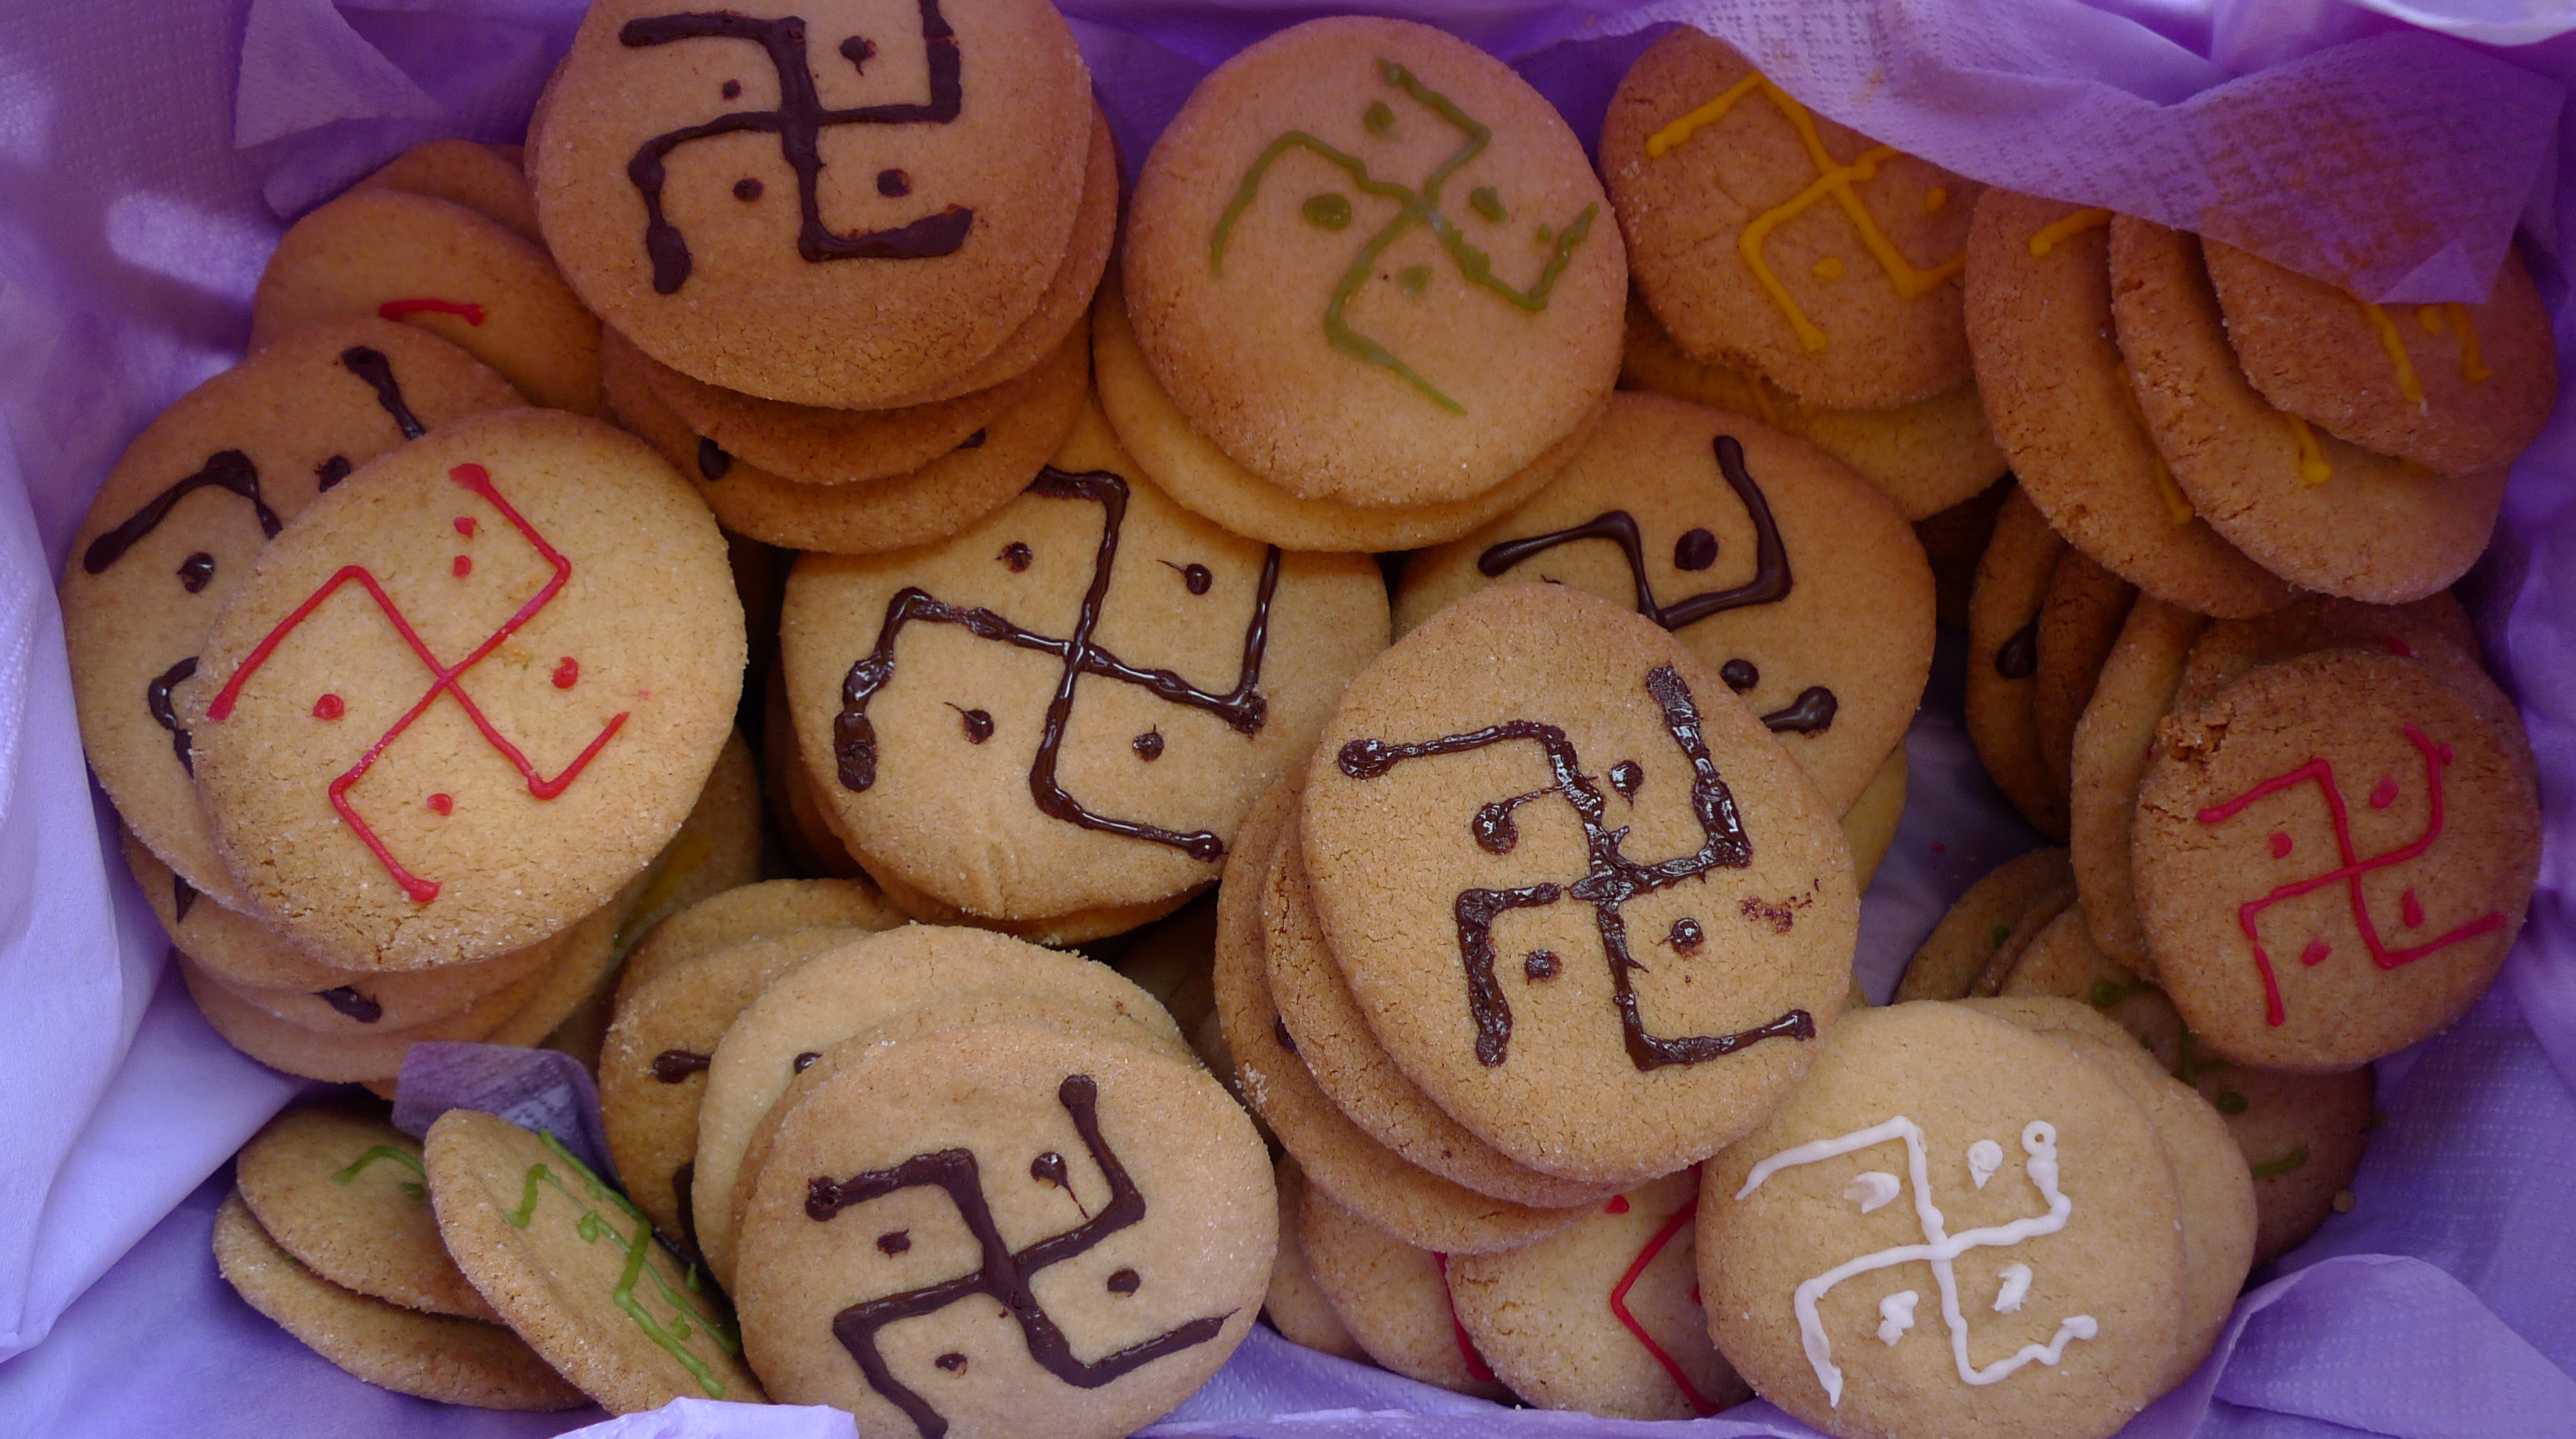 "Man woman" swastika, cookies, "traditional tattoo festival"